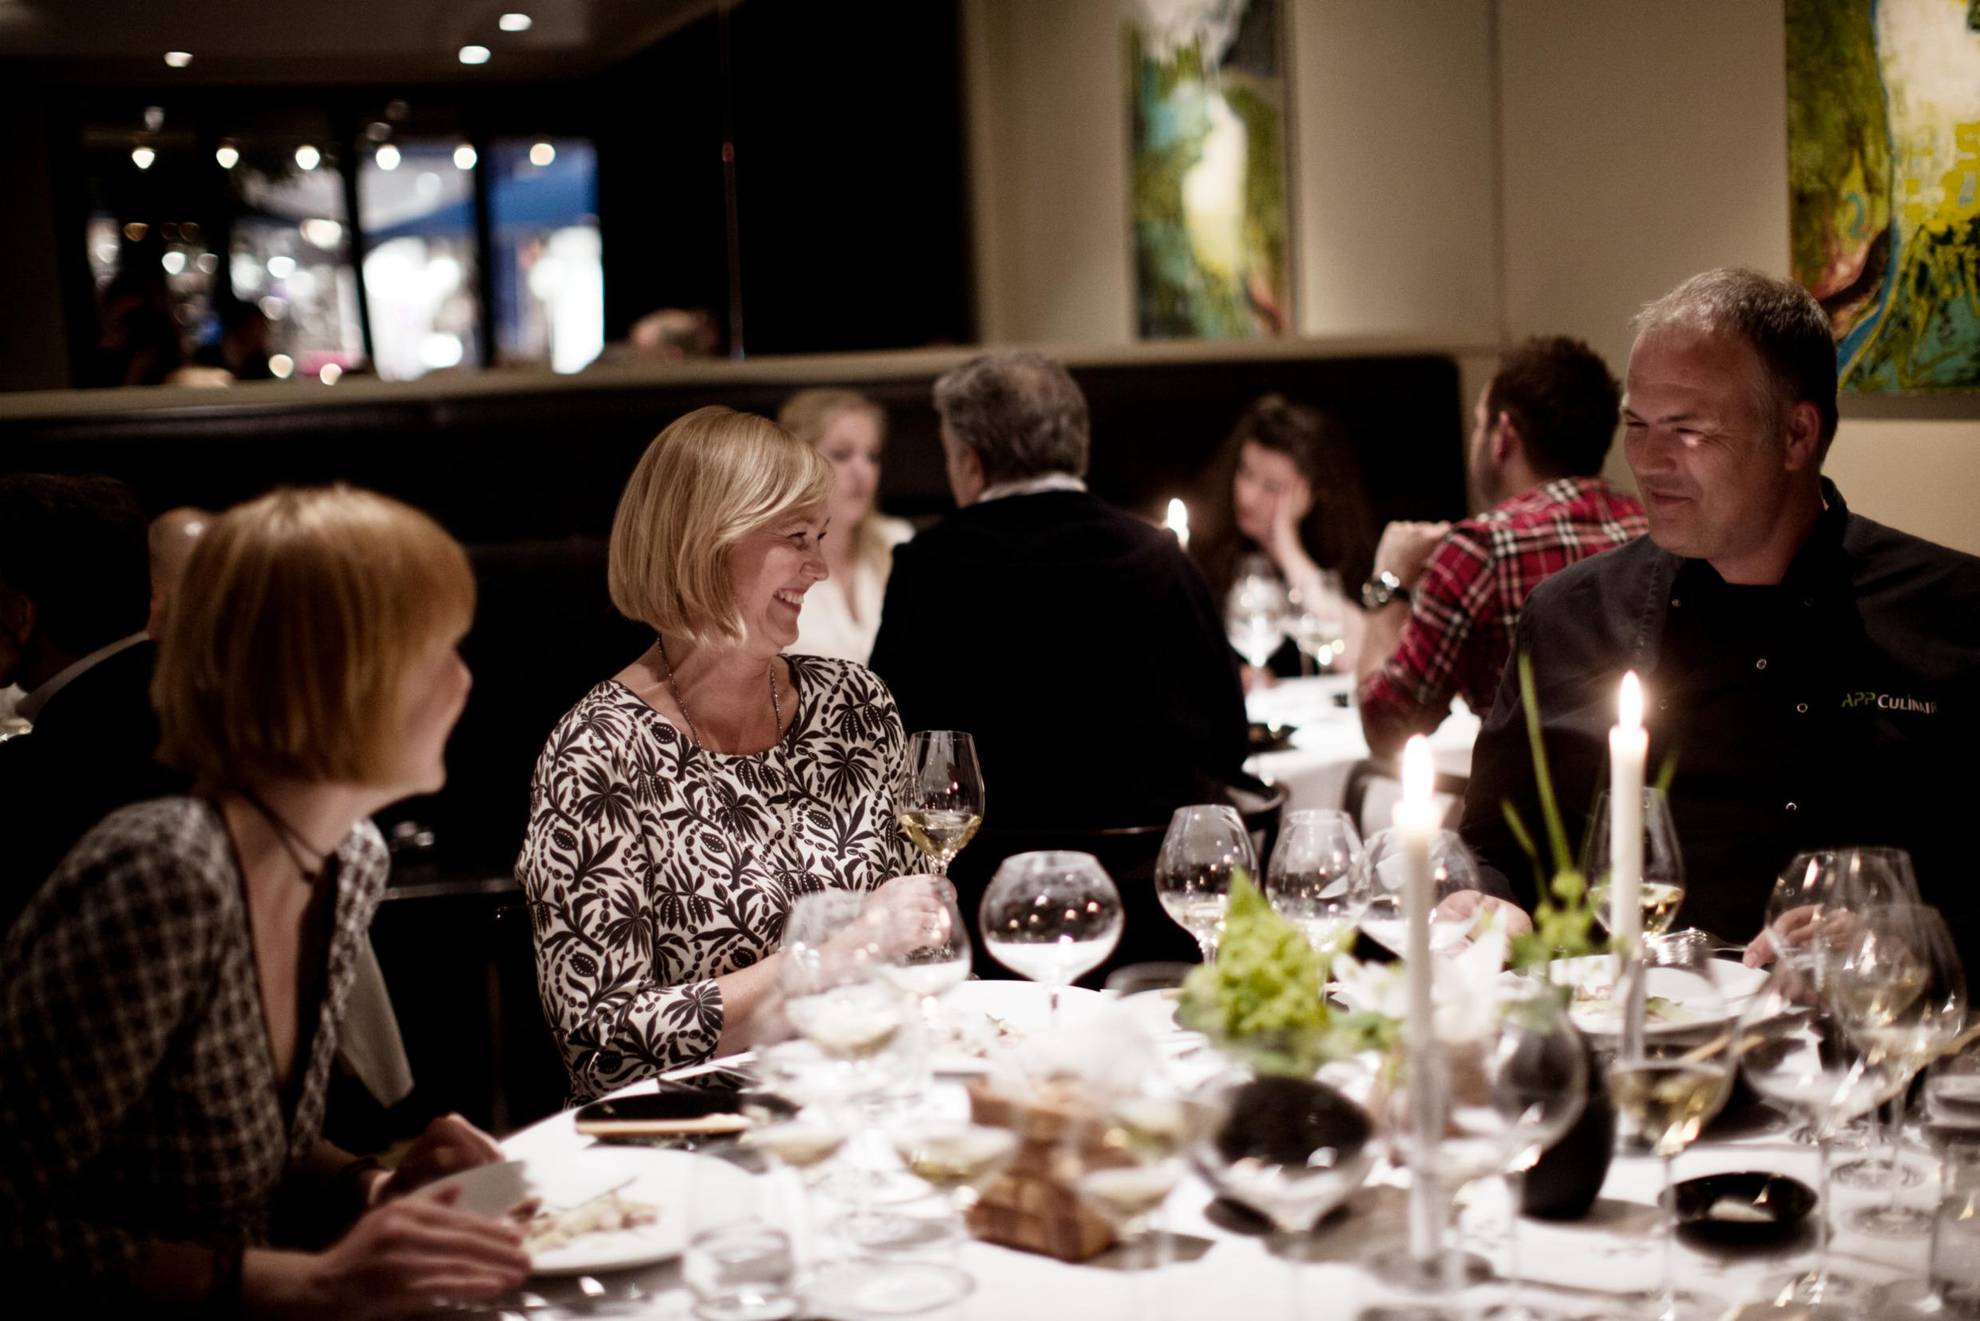 Twee vrouwen en een man dineren in een restaurant. Je ziet ook enkele gasten aan een tafel achteraan.